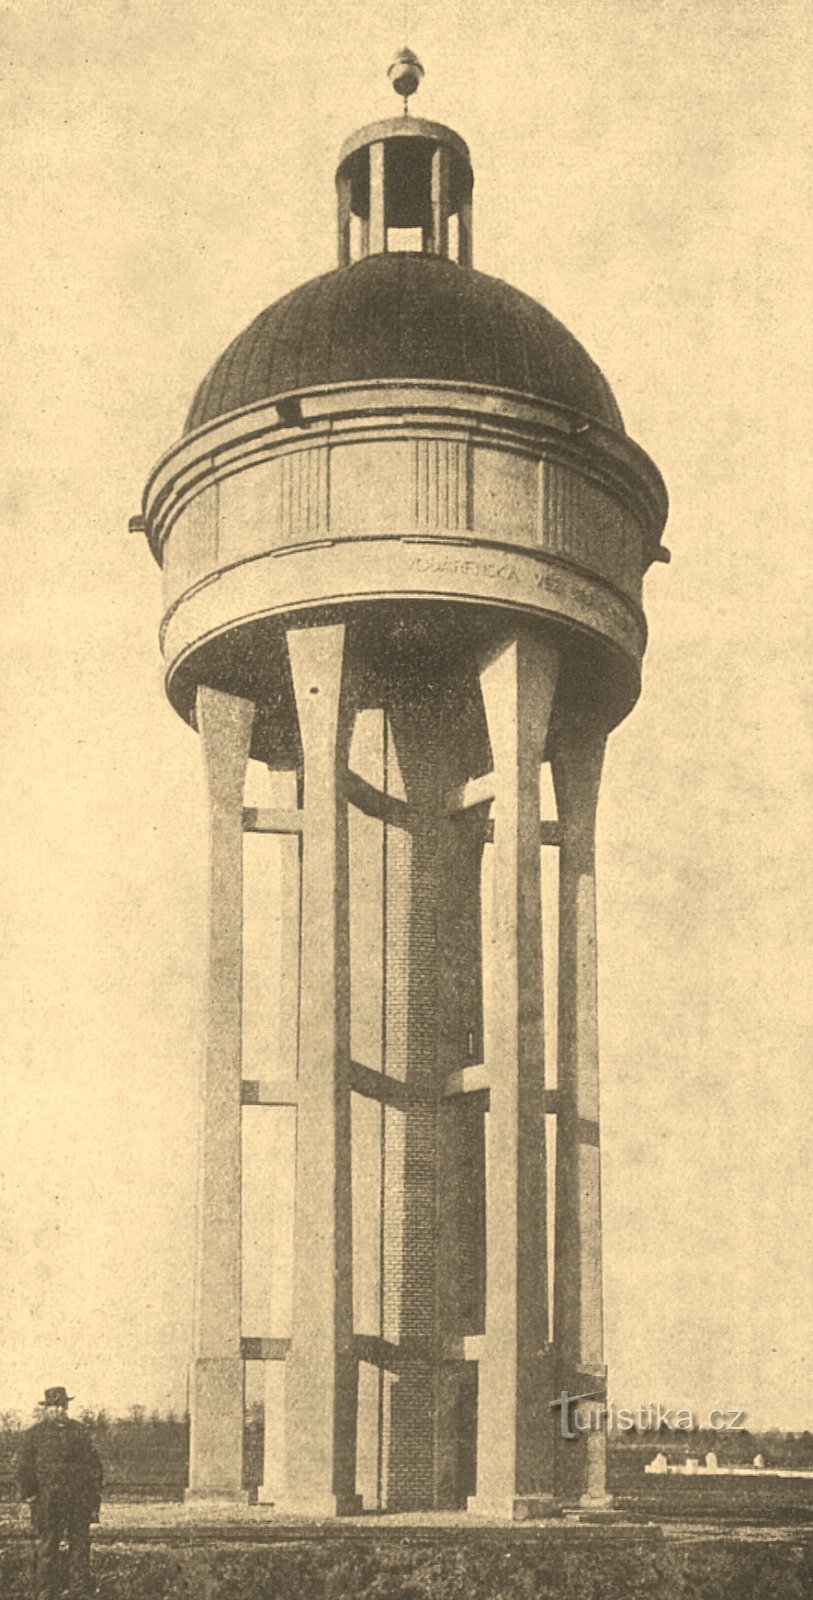 Фотография Богданецкого водохранилища периода после 1911 года.